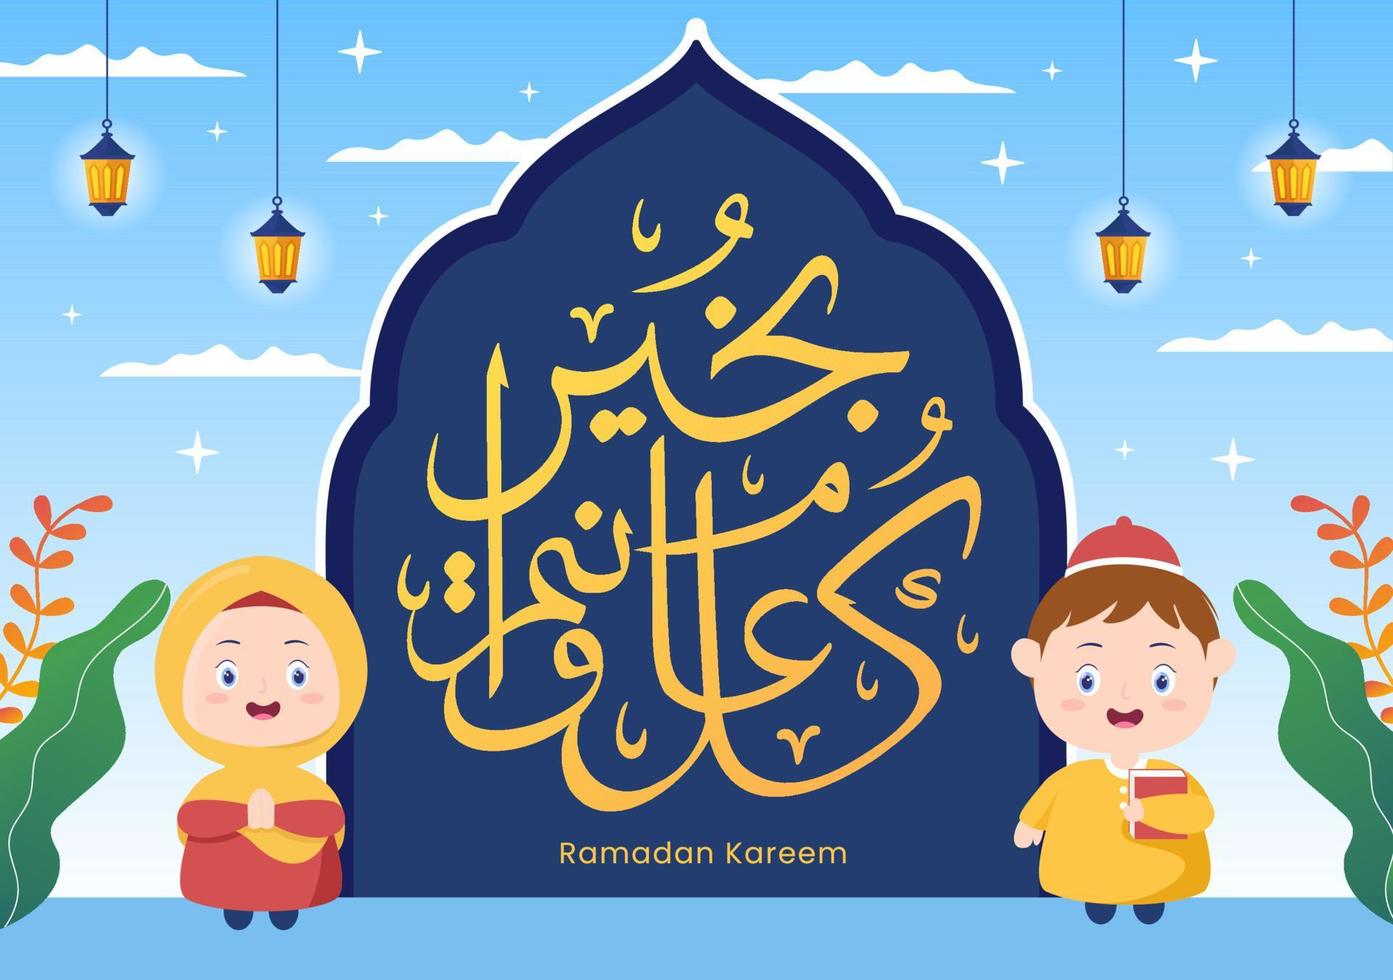 ramadan kareem med människor, moské, lyktor och måne i platt bakgrund vektorillustration för religiös högtid islamisk eid fitr eller adha festival banner eller affisch vektor